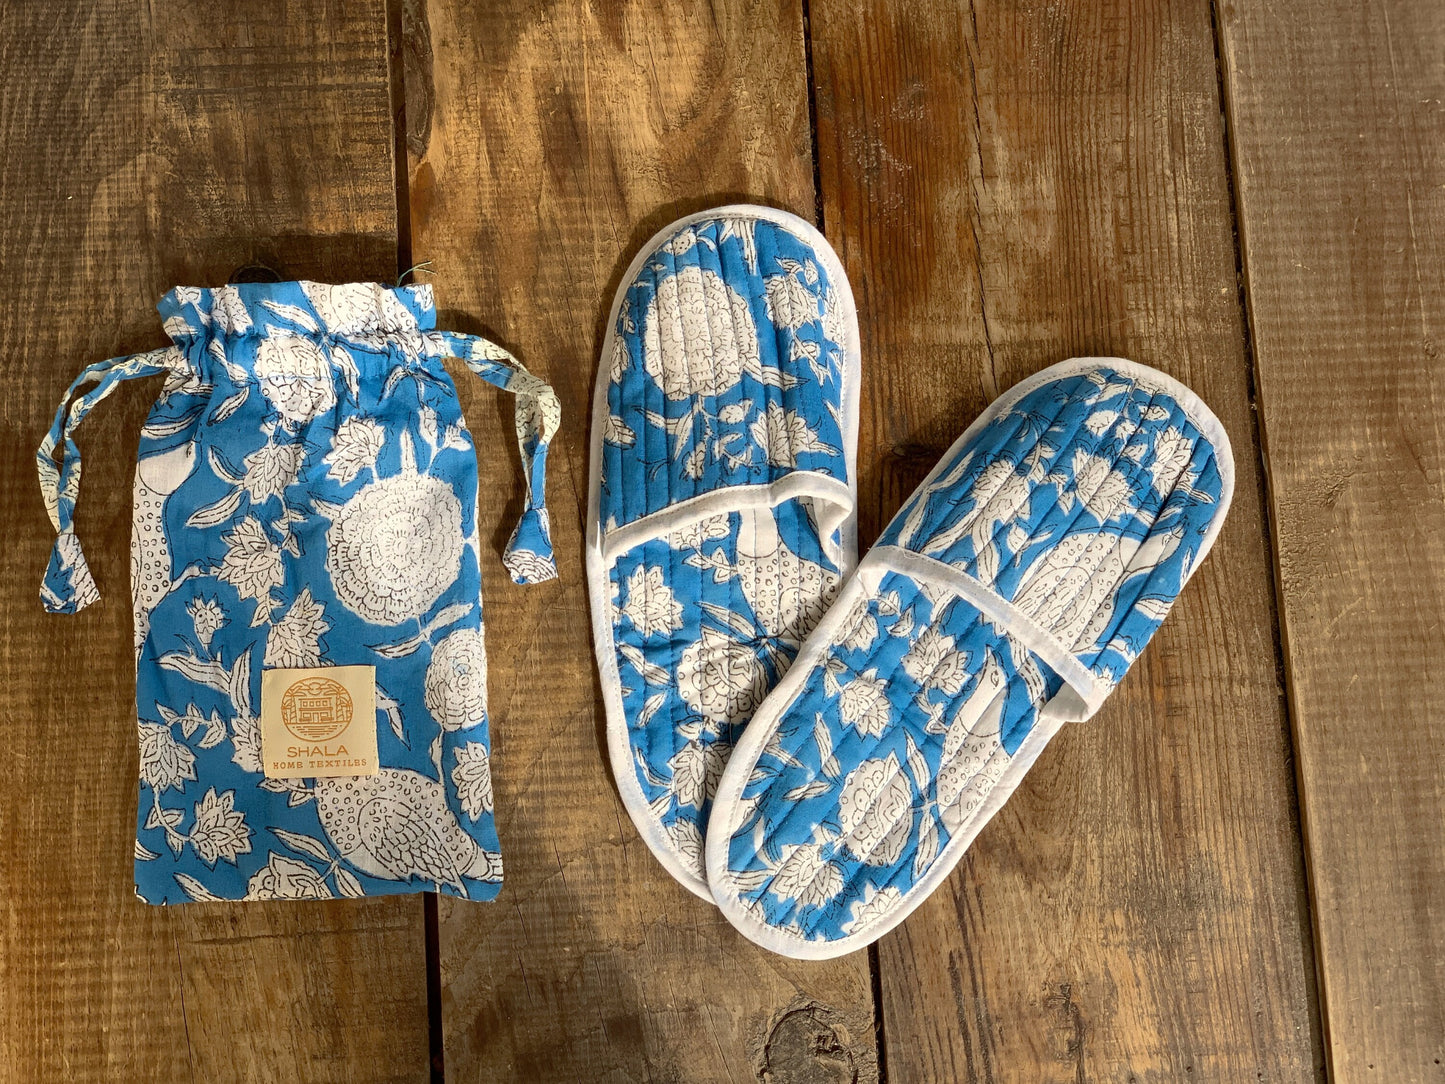 SET regalo · Pijama manga/pantalón corto y zapatillas a juego · Algodón puro estampado block print artesanal en India · Azul flores